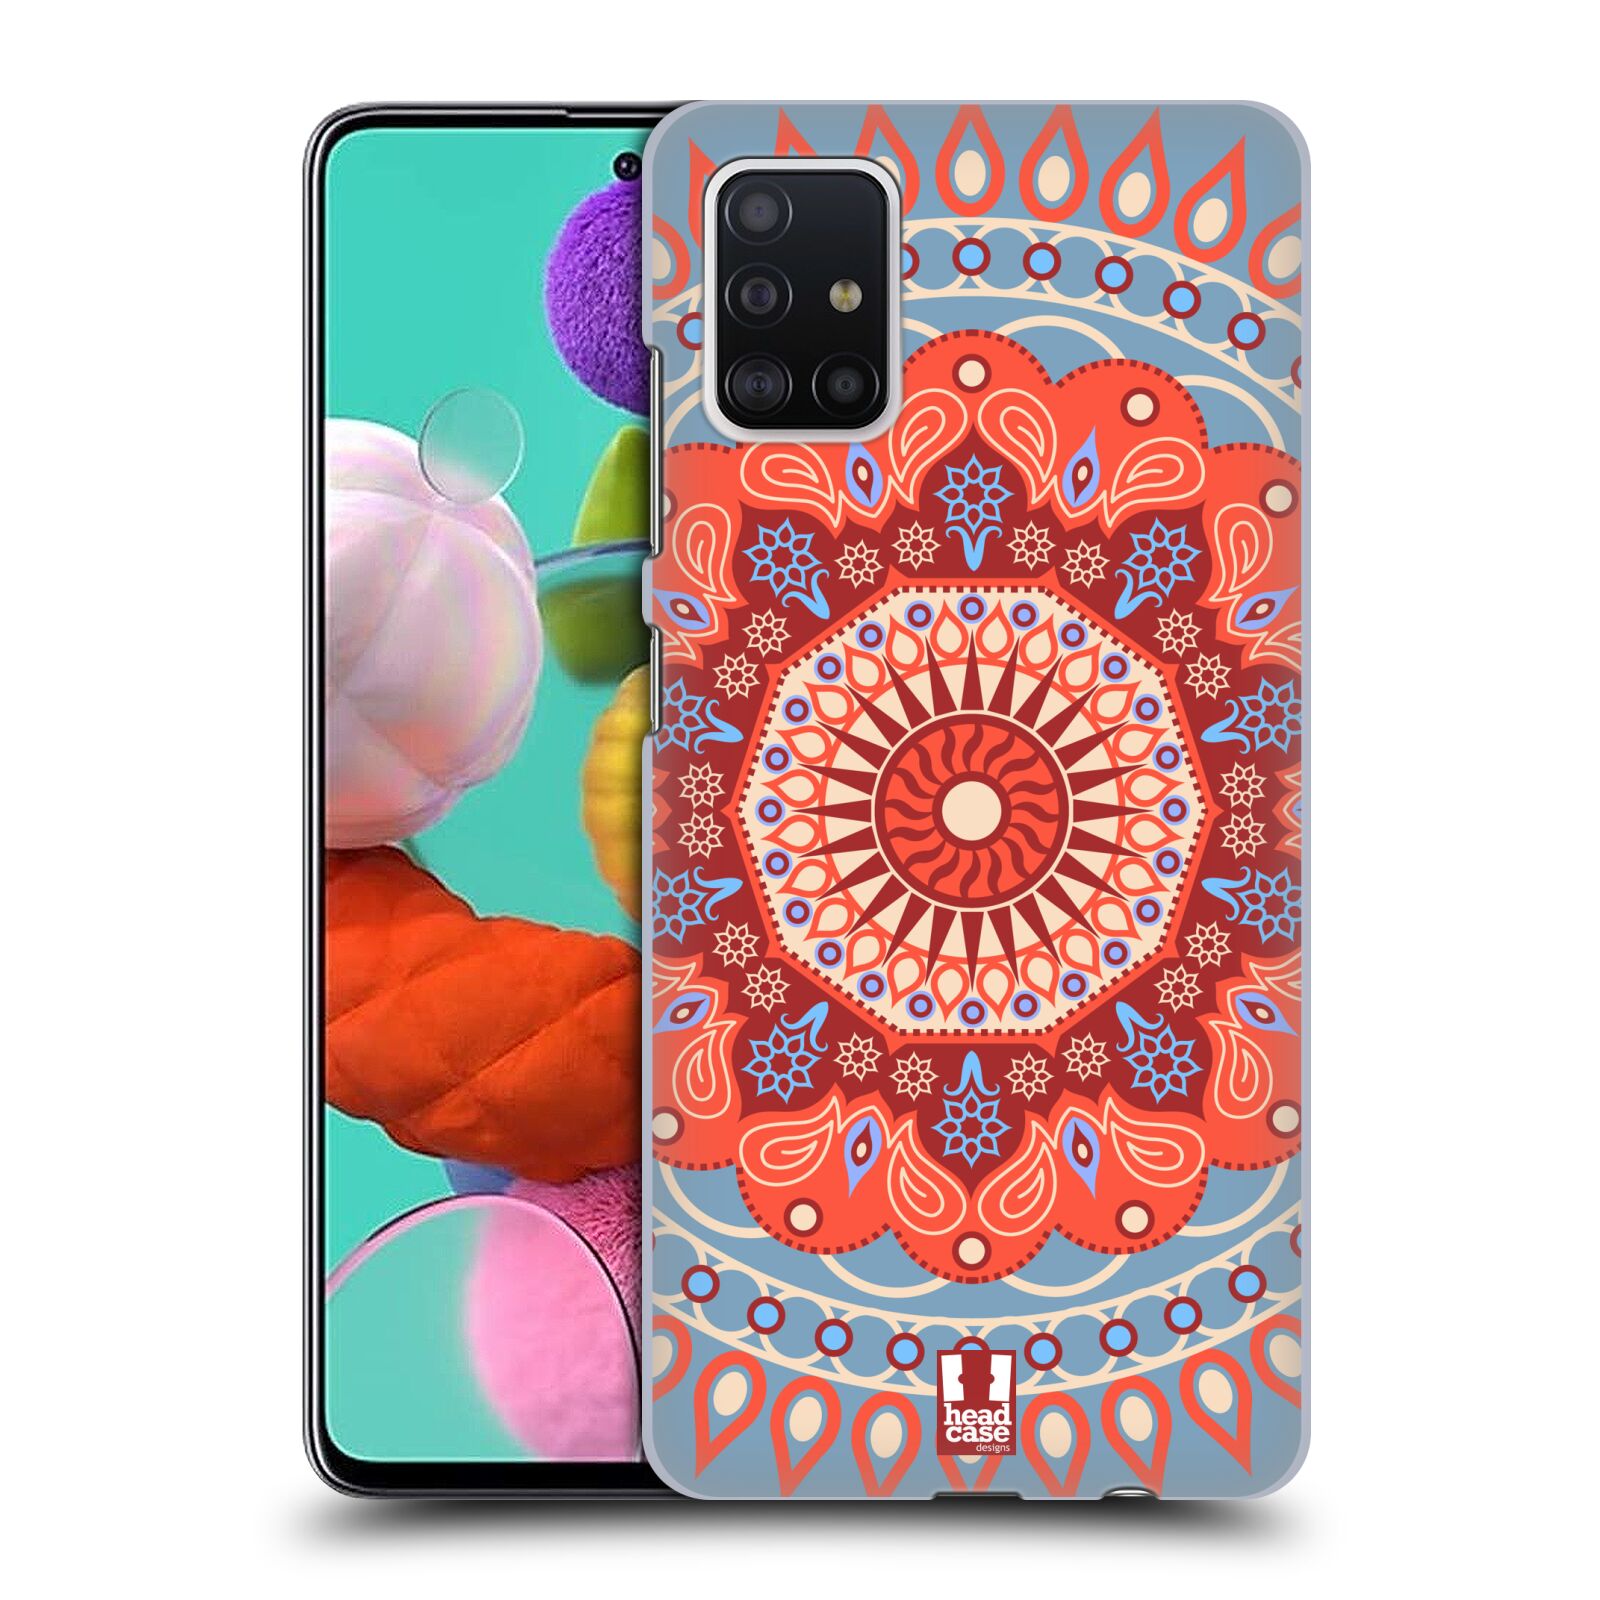 Pouzdro na mobil Samsung Galaxy A51 - HEAD CASE - vzor Indie Mandala slunce barevný motiv ČERVENÁ A MODRÁ